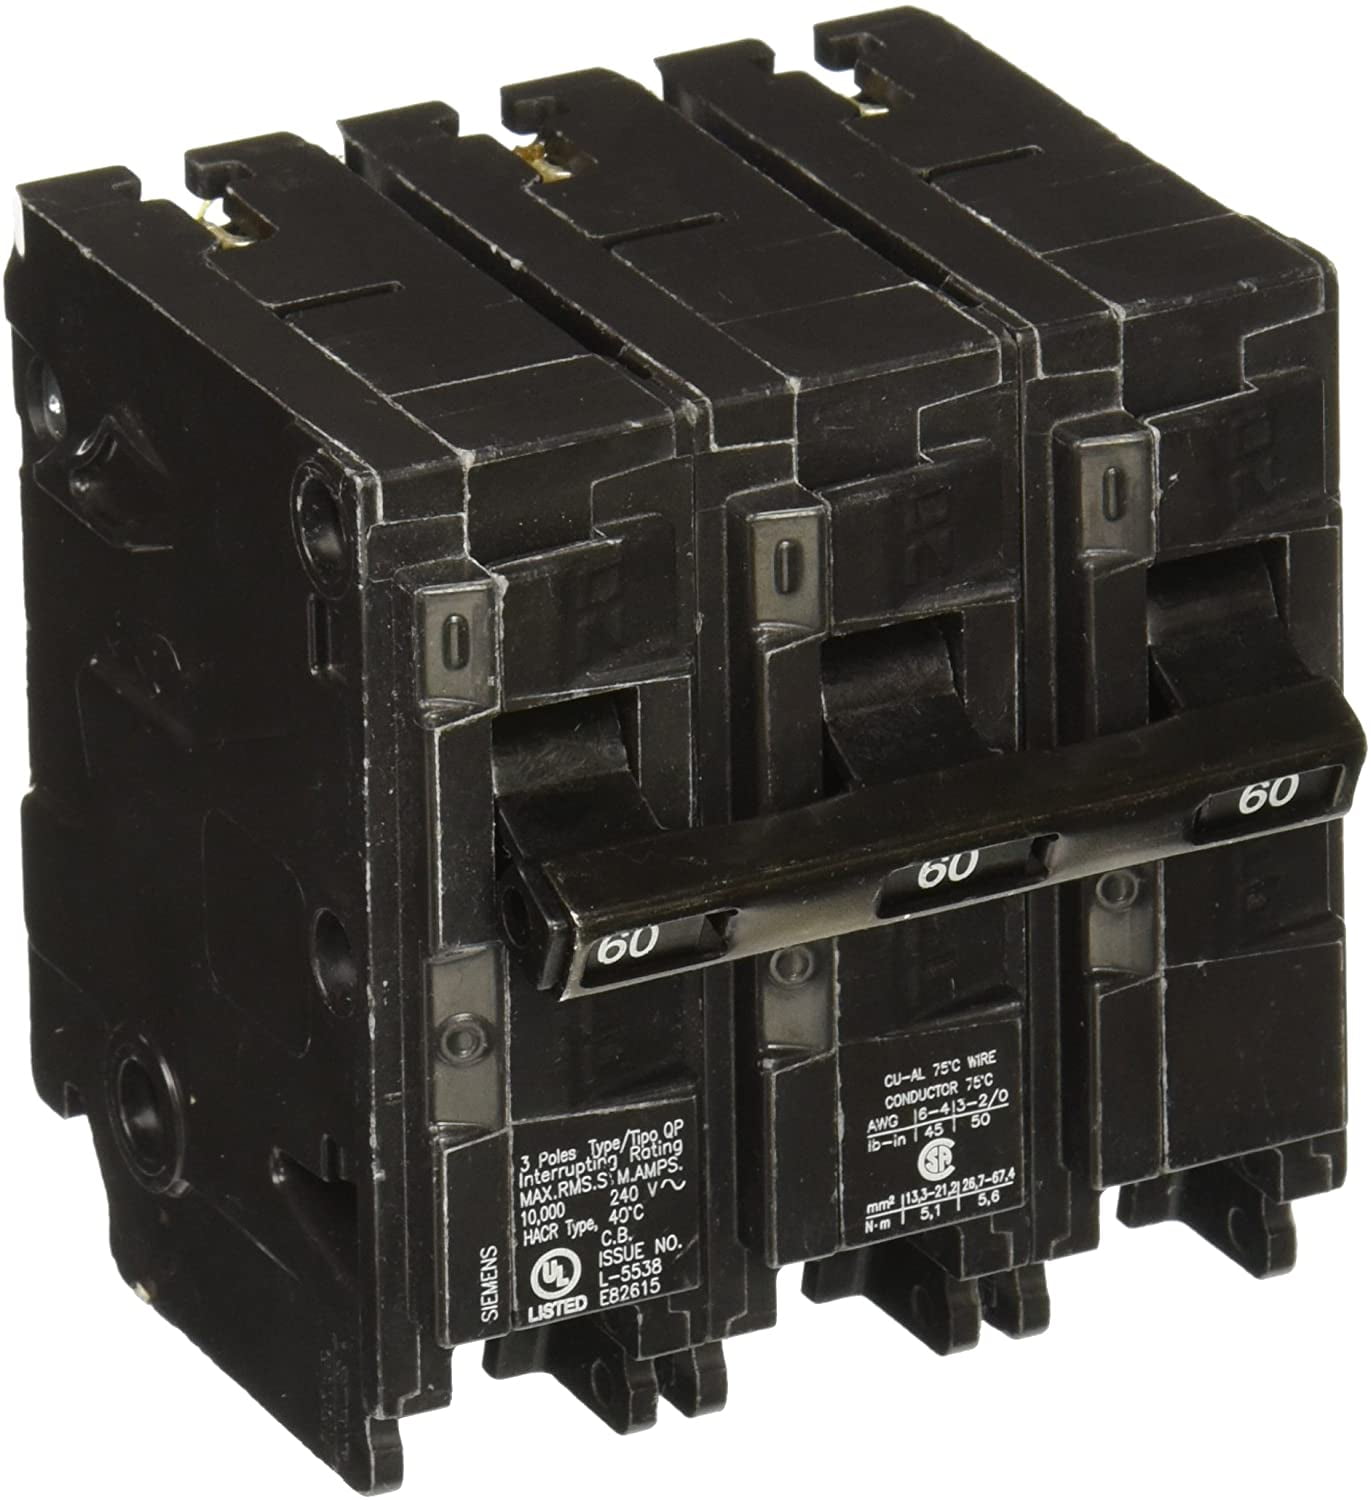 NEW Siemens Q360 3P 60A 240V Plug-In Molded Case Circuit Breaker 10kA@240V 